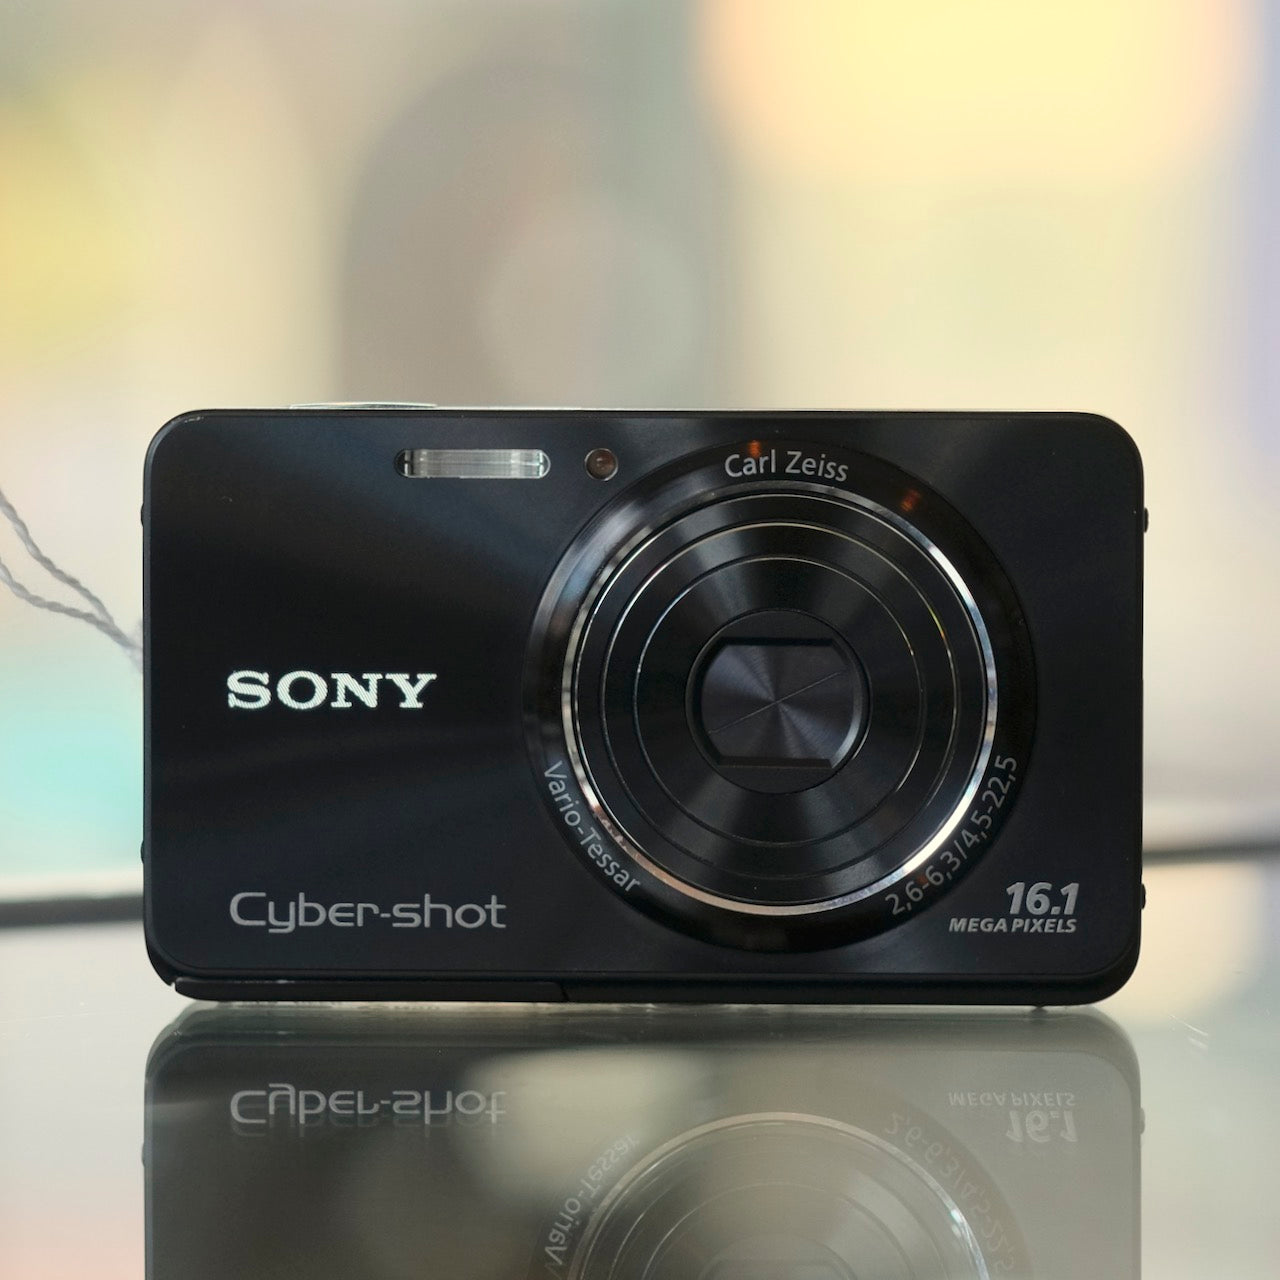 Sony Cyber-Shot DSC-W580